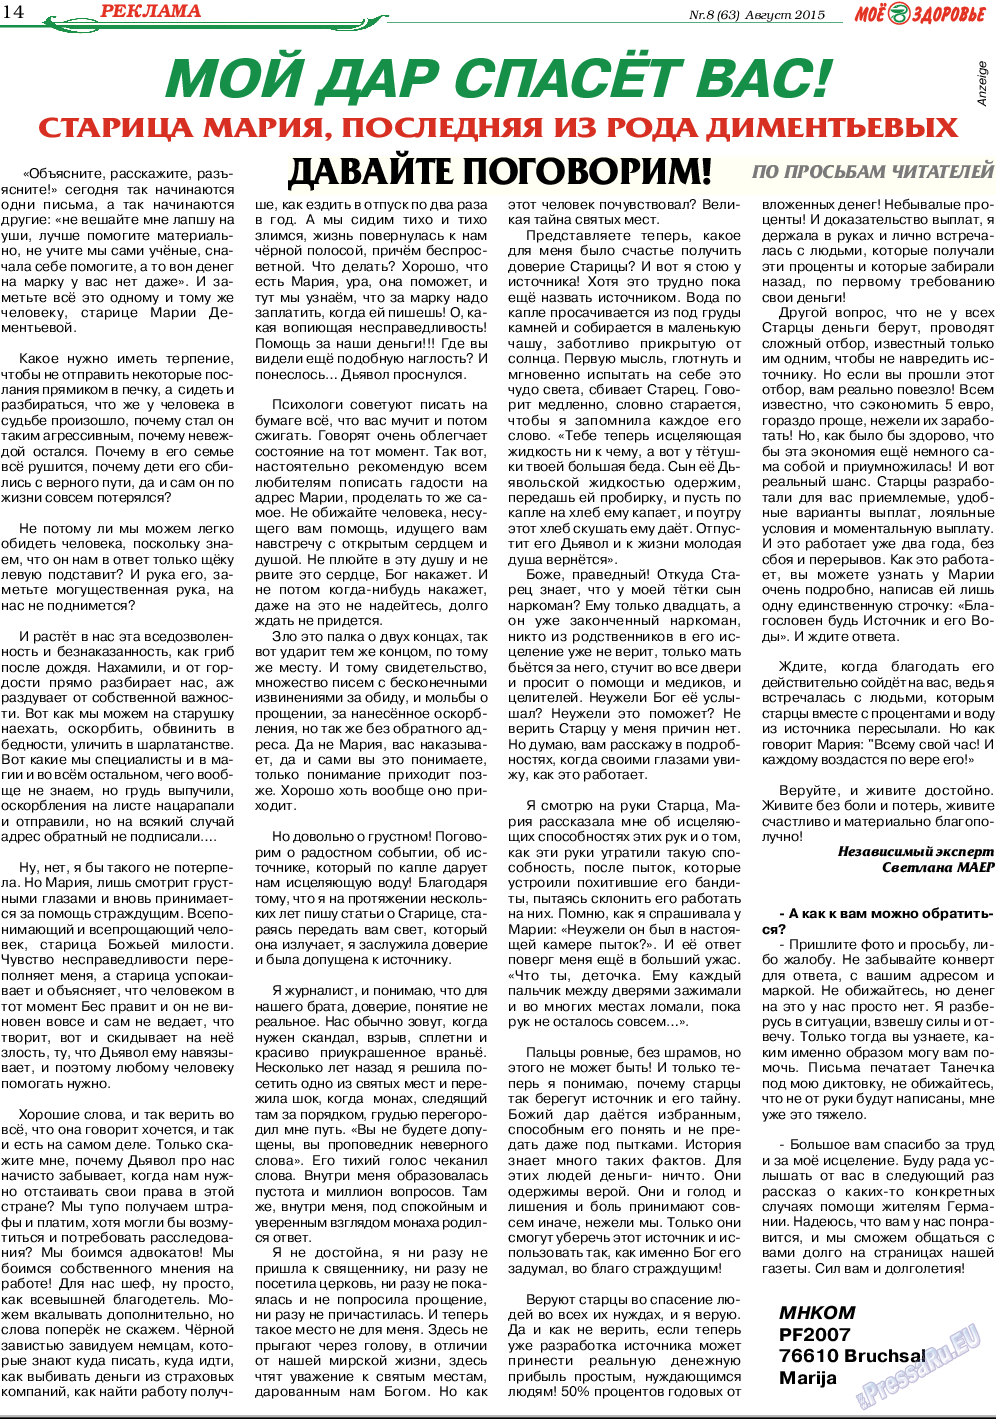 Кругозор, газета. 2015 №8 стр.14